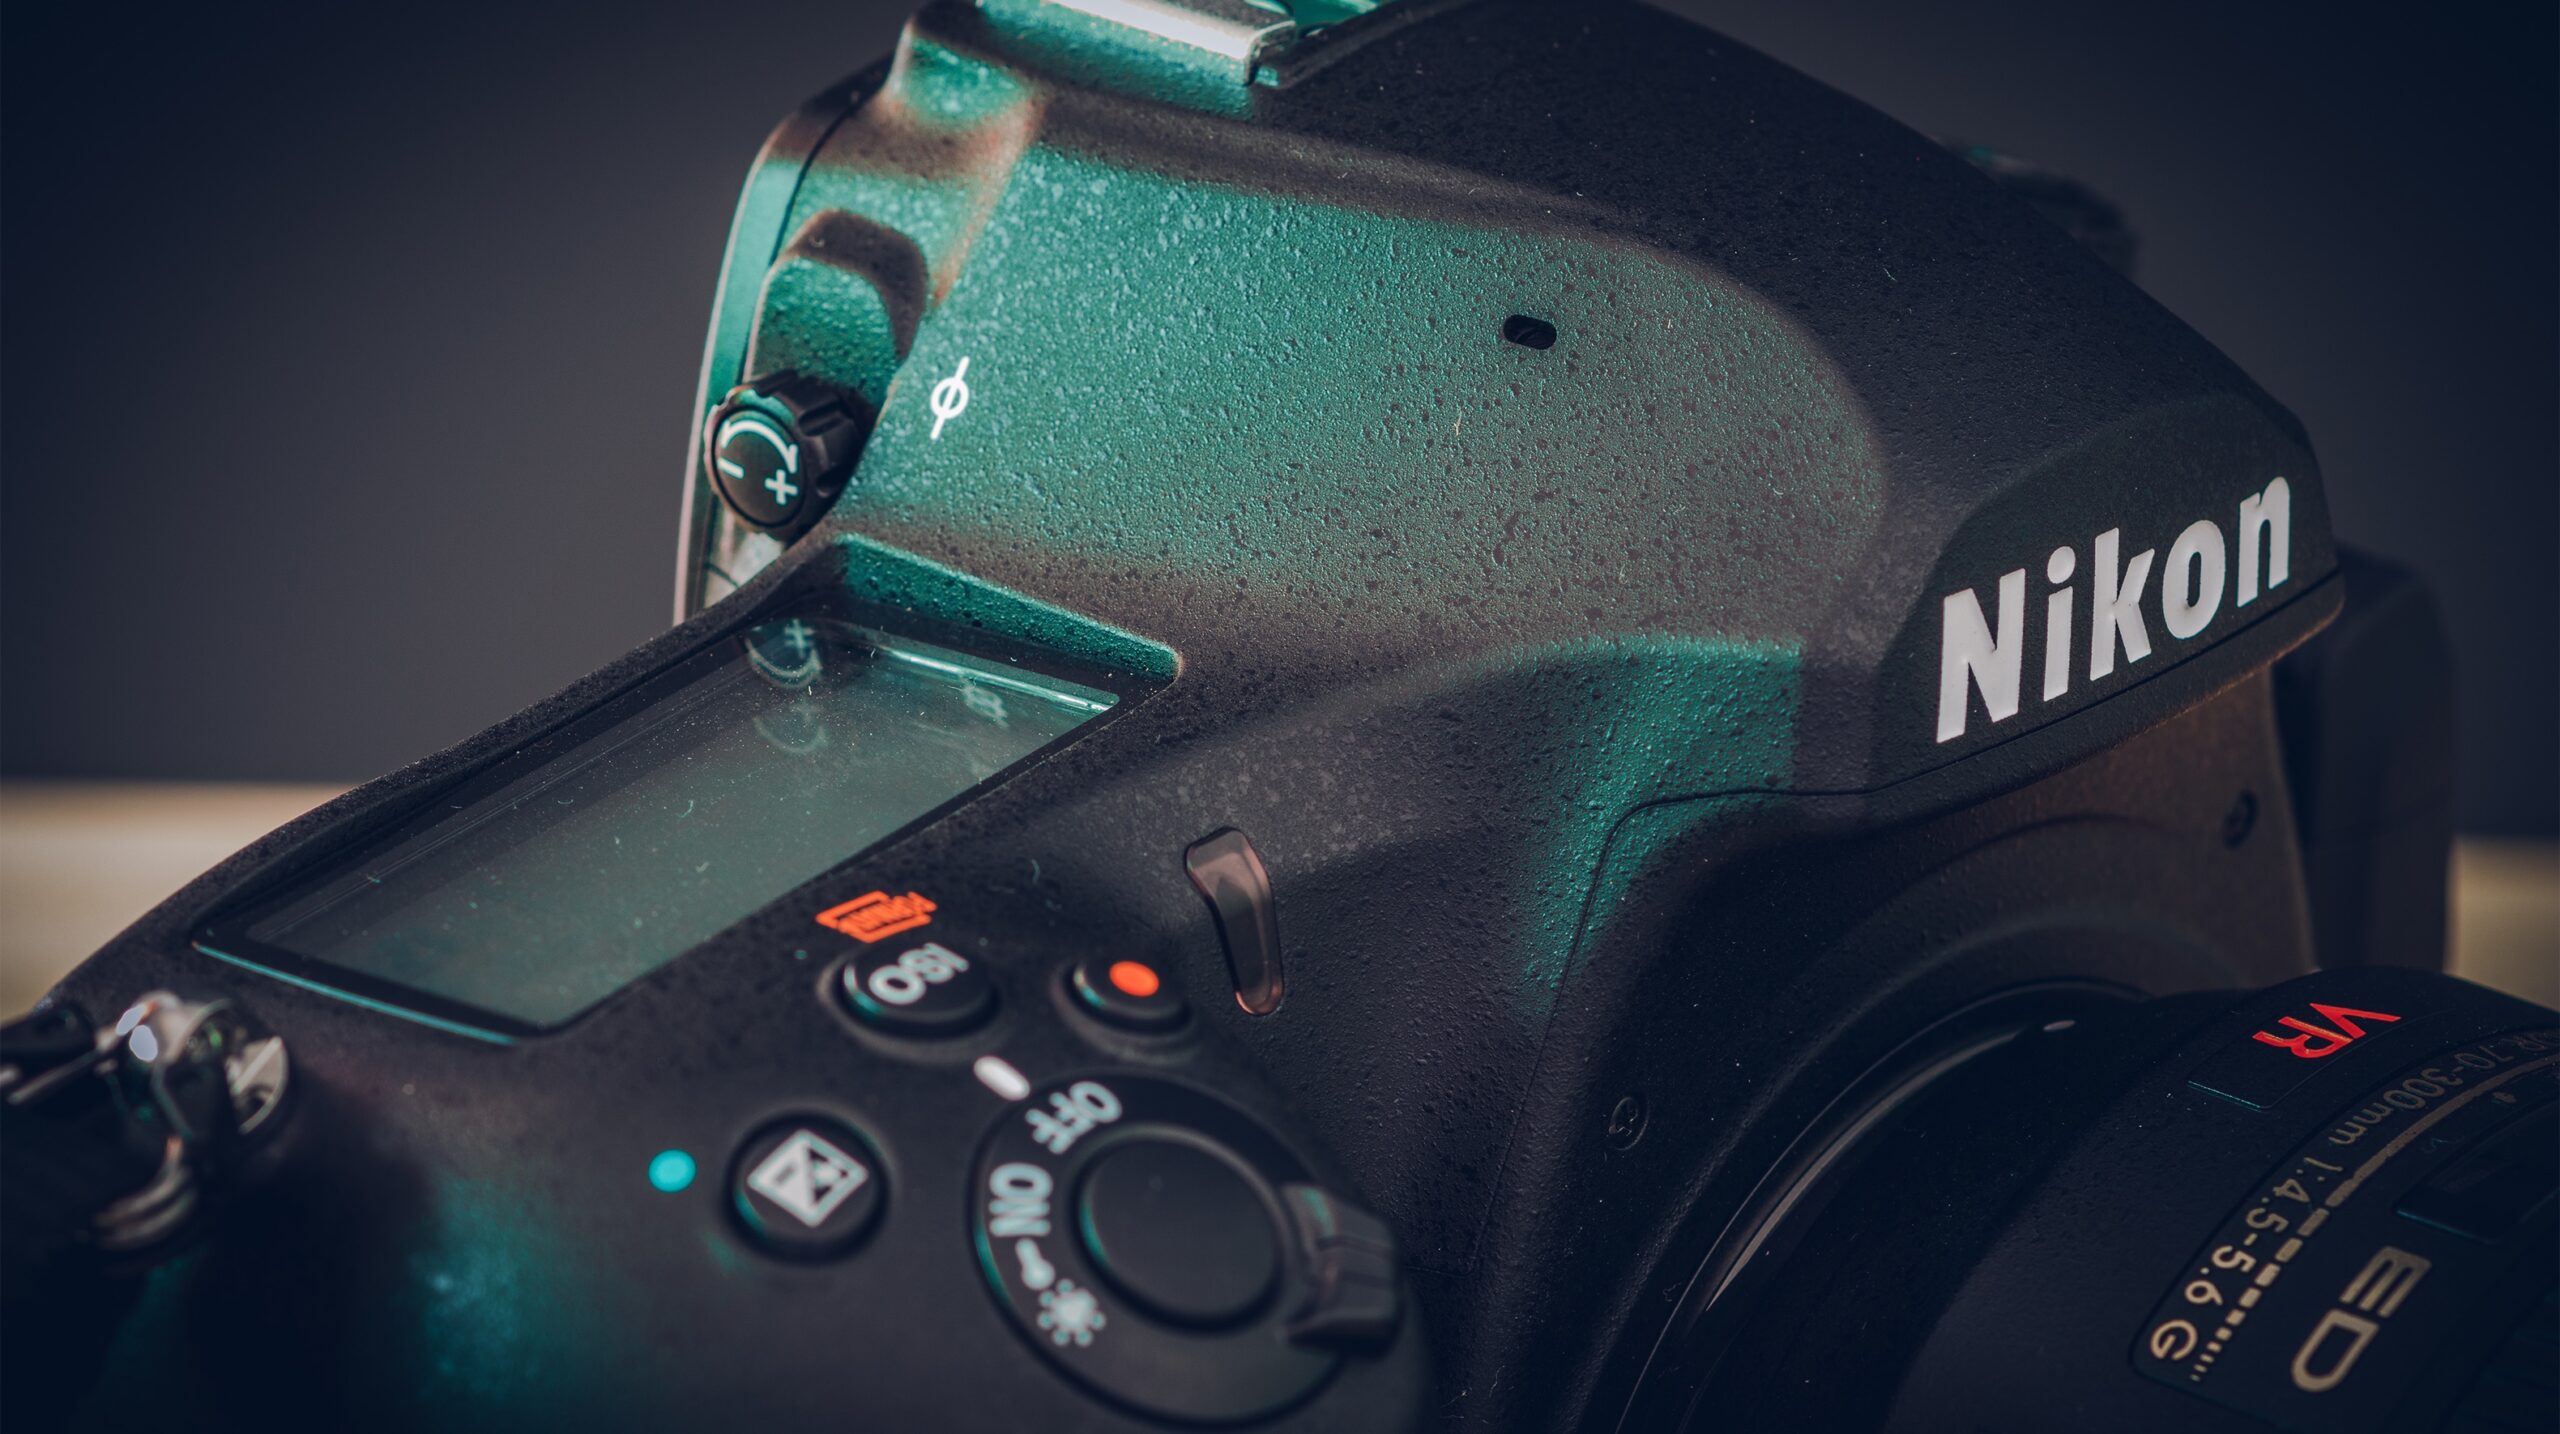 Le fotocamere reflex Nikon potrebbero essere sospese a favore di alternative mirrorless